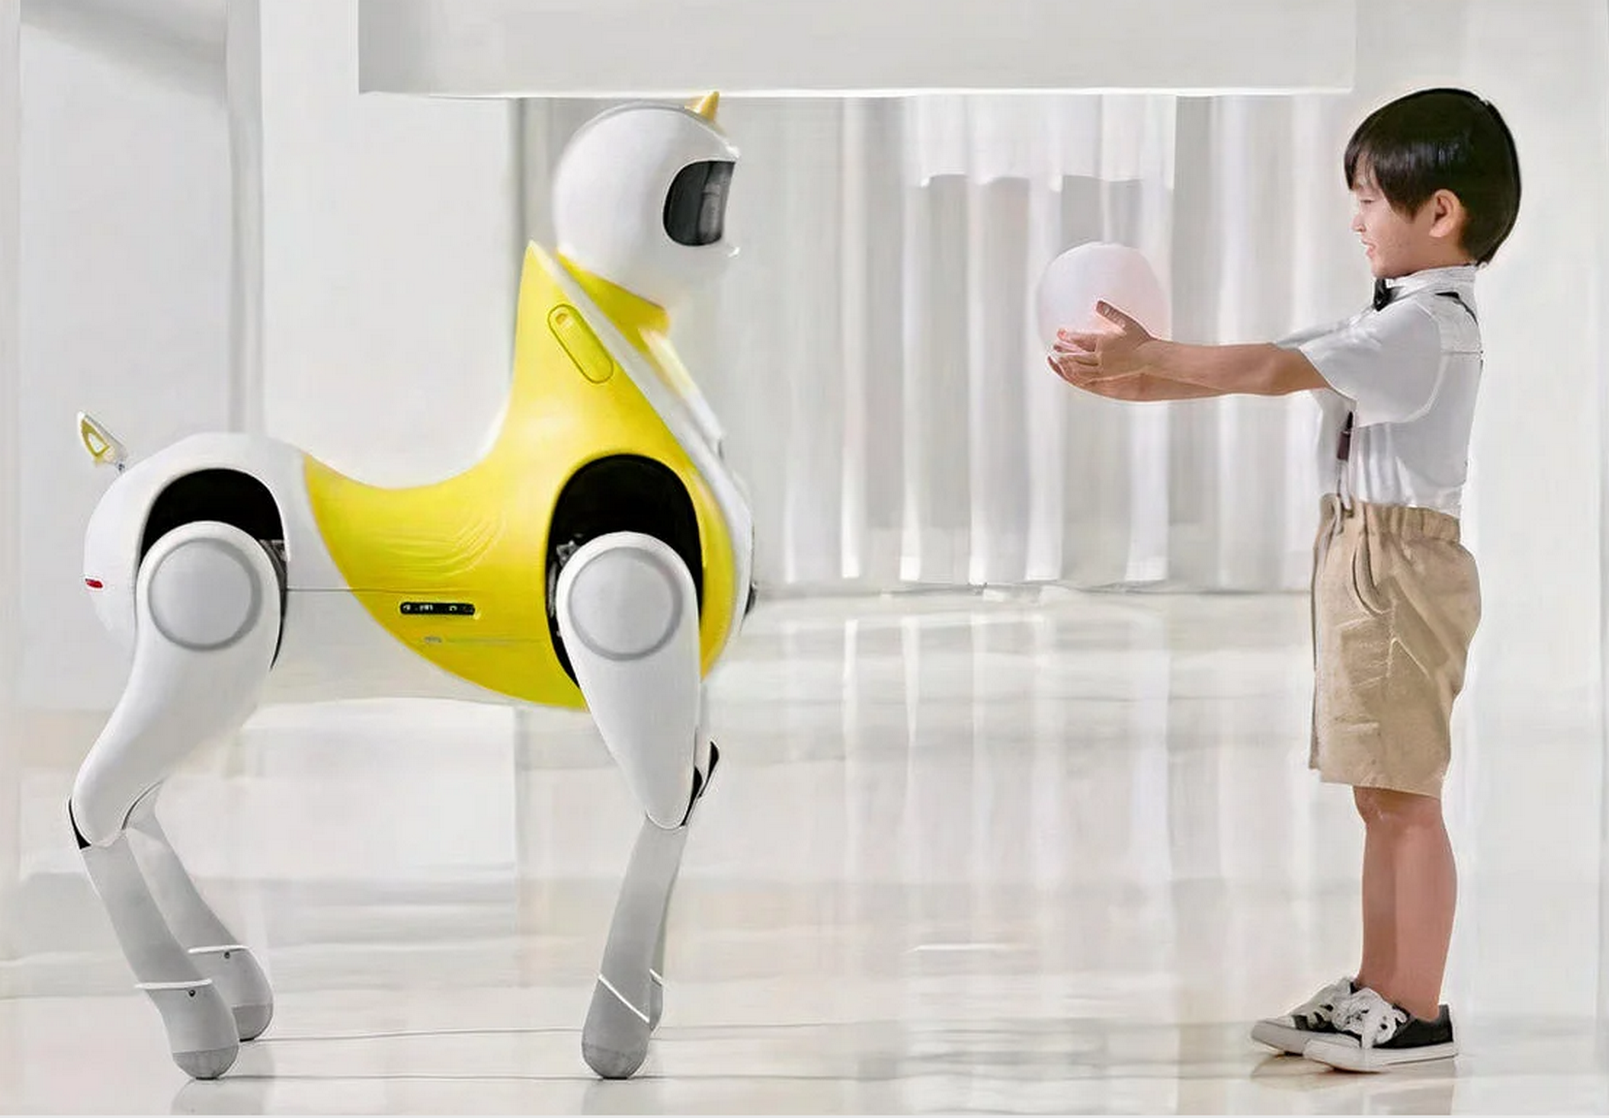 Le robot poney imaginé par Xpeng est censé pouvoir être chevauché par des enfants. Reste à voir quels dispositifs de protection contre les chutes sont prévus dans la version finale. © Xpeng Robotics